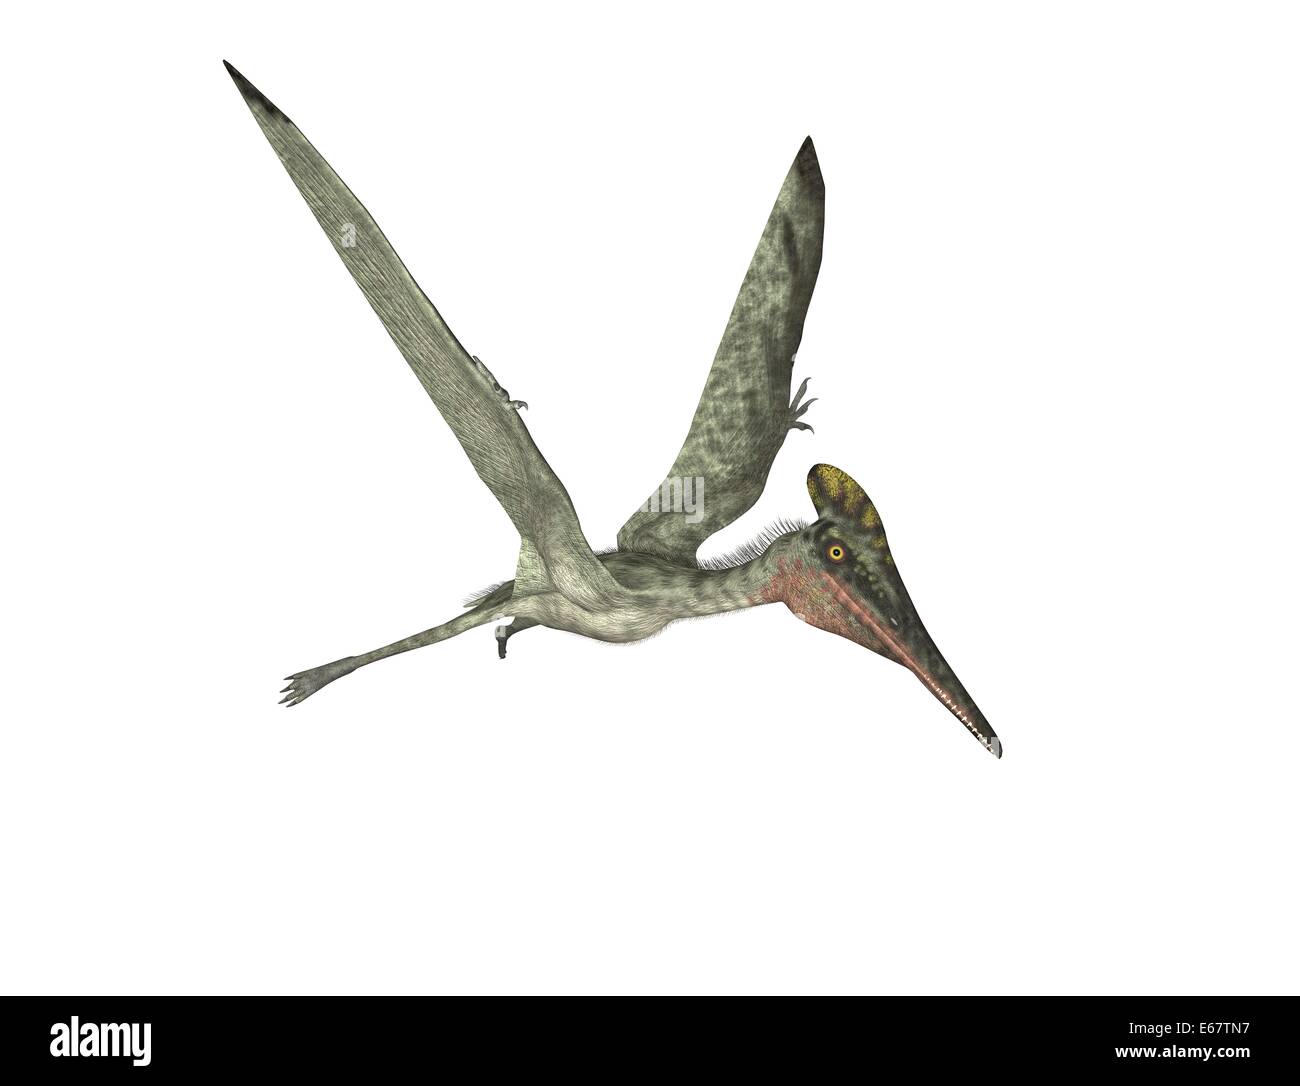 Dinosaurier Pterodactylus / dinosaur Pterodactylus Stock Photo